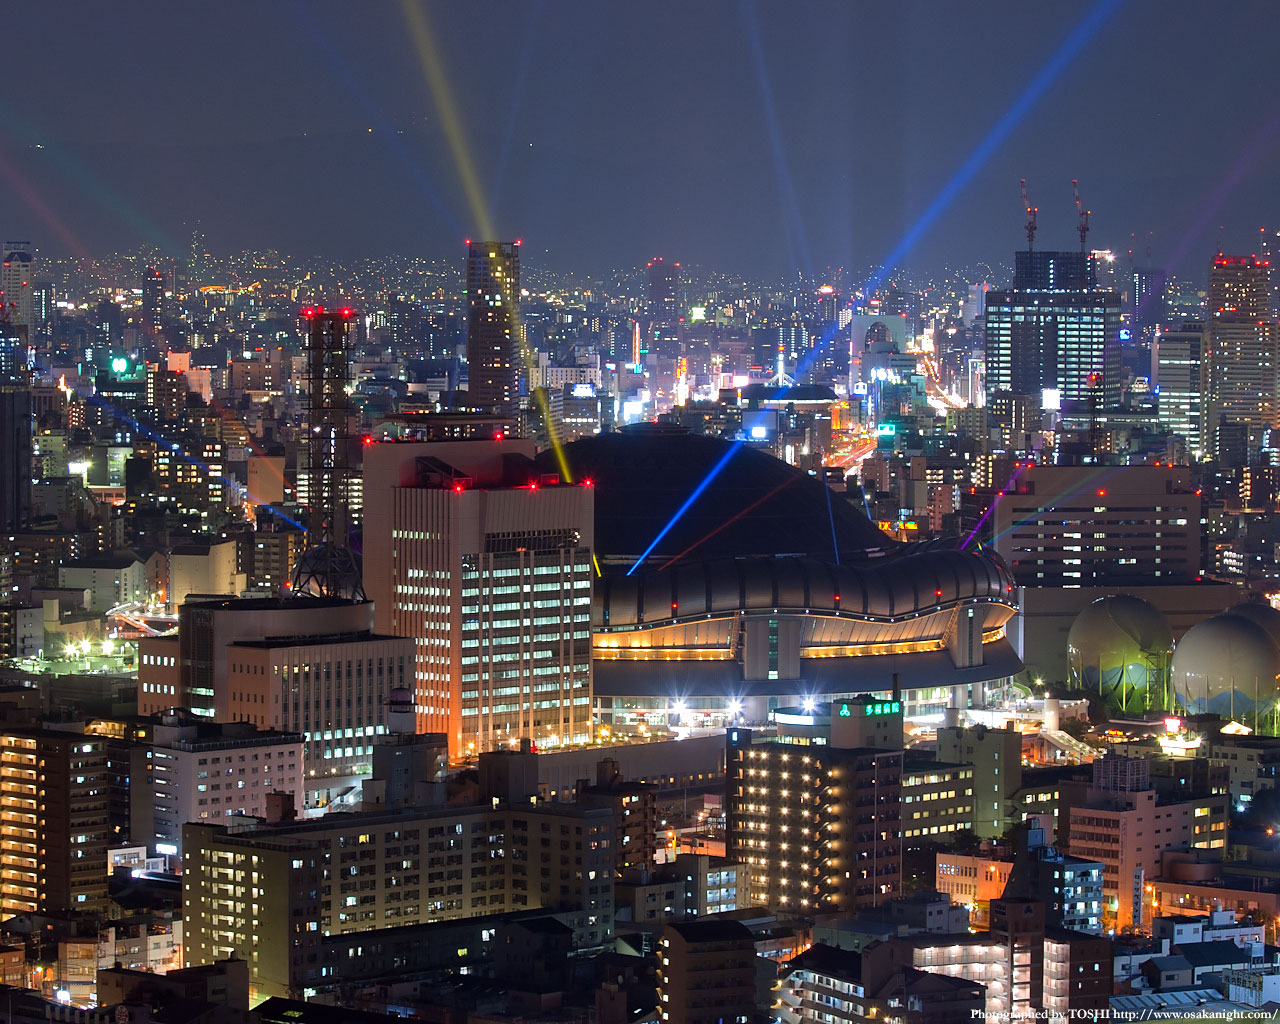 京セラドーム大阪のライトアップ